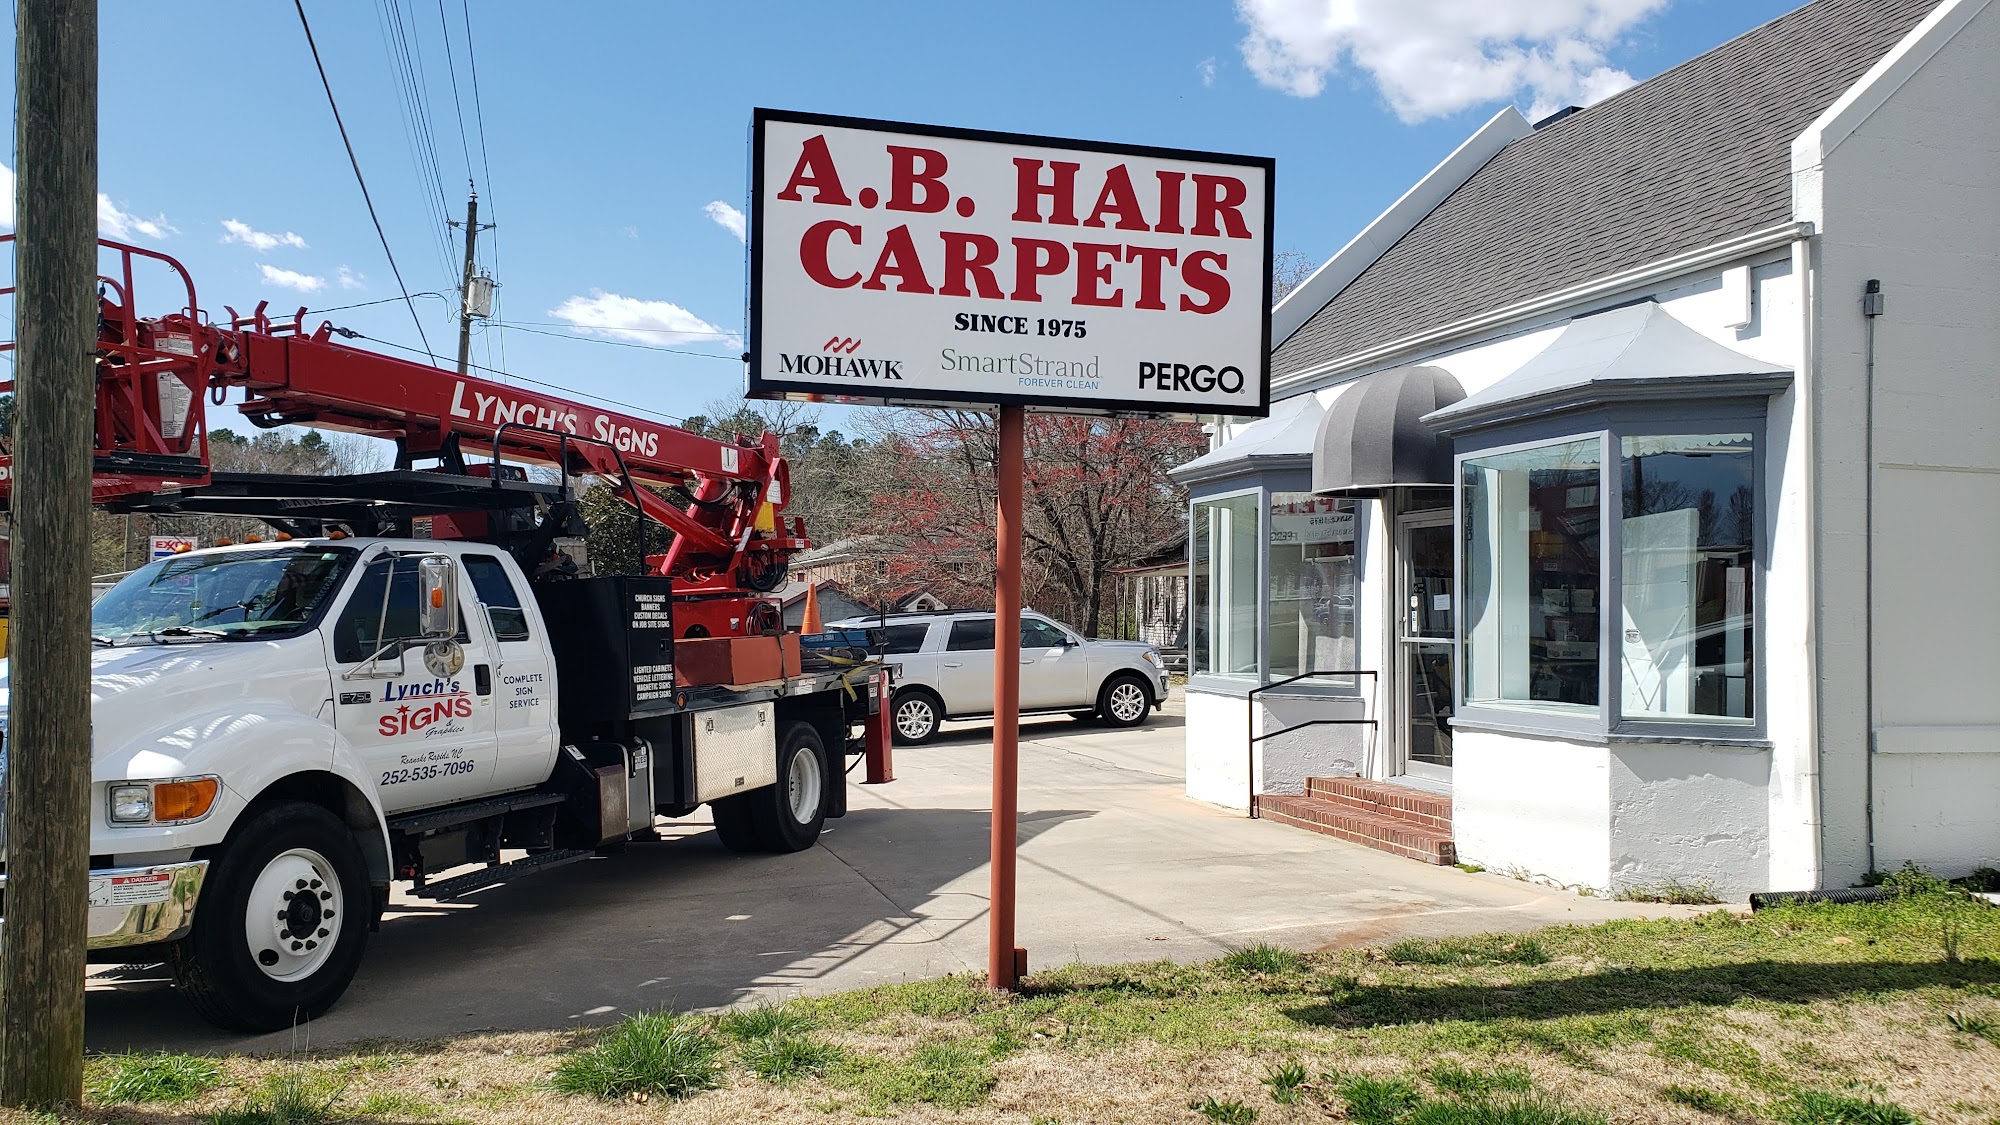 A B Hair Carpets Inc 203 US-1, Norlina North Carolina 27563